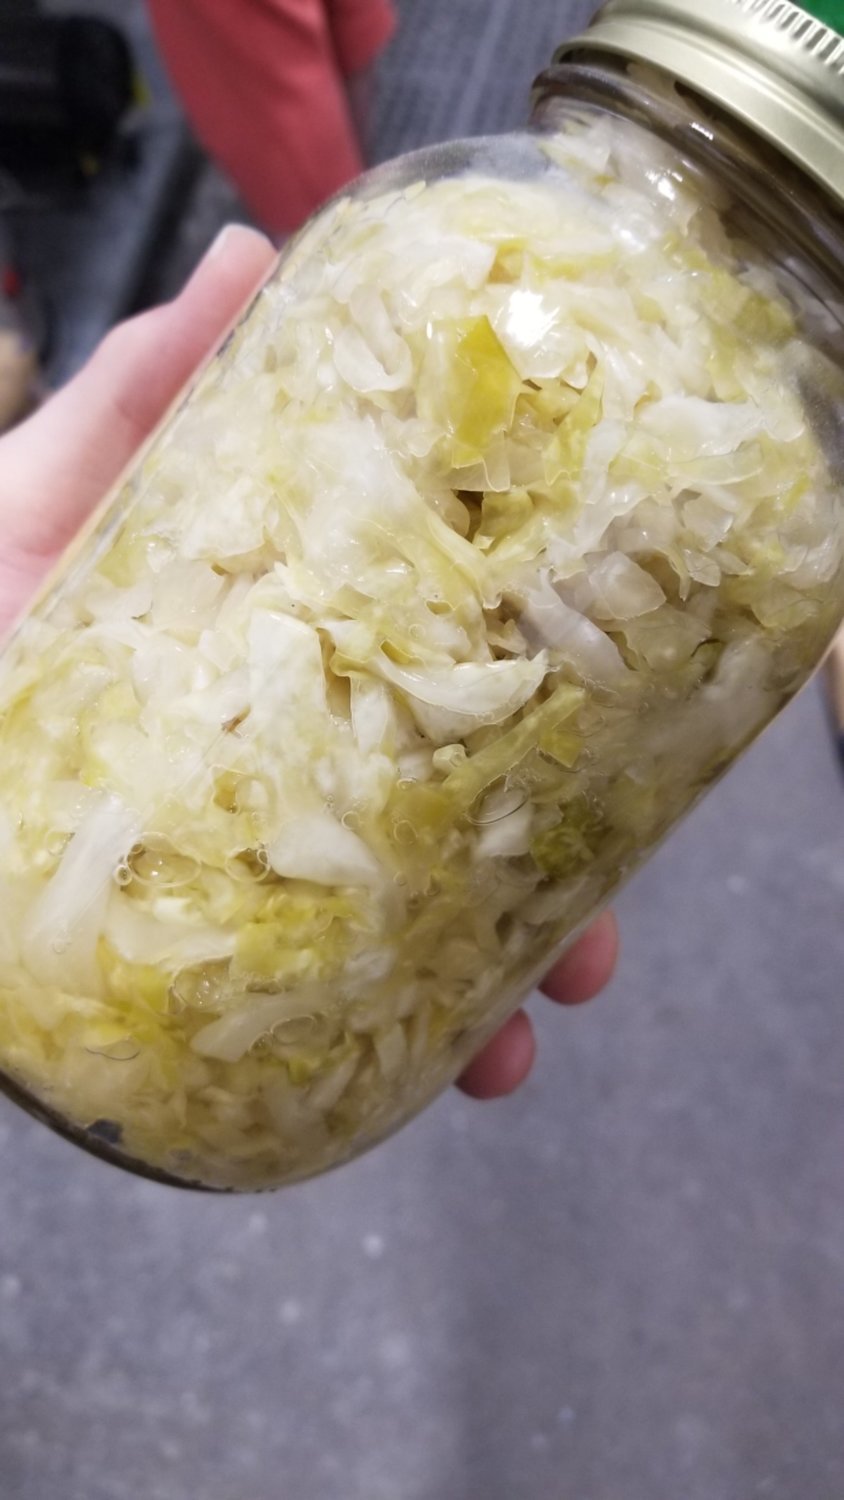 Sauerkraut - unpasteurized